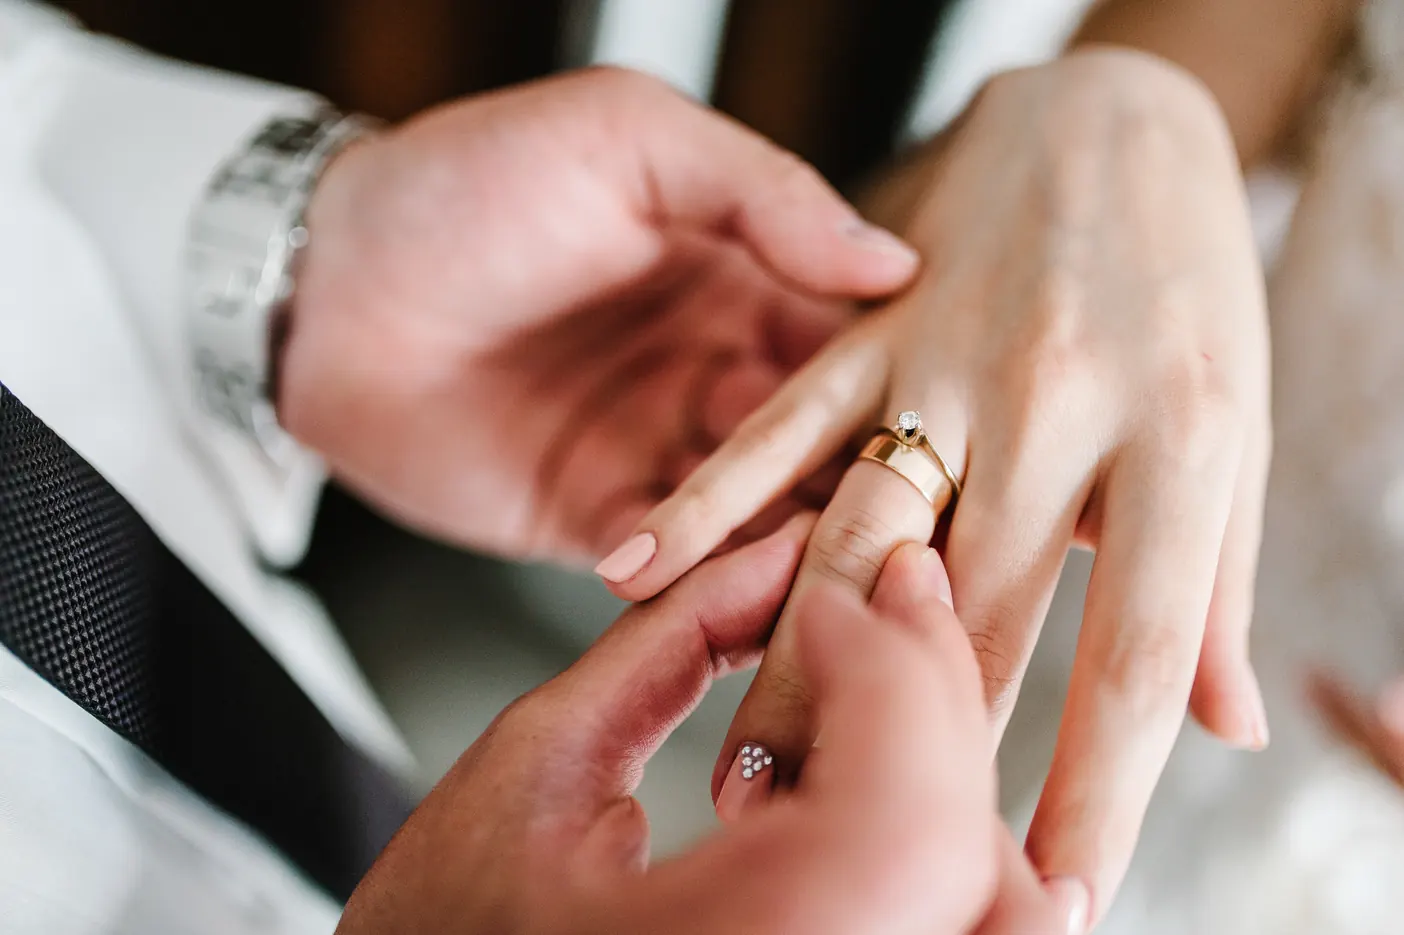 Urlop okolicznościowy na ślub – komu się należy i ile dni przysługuje?